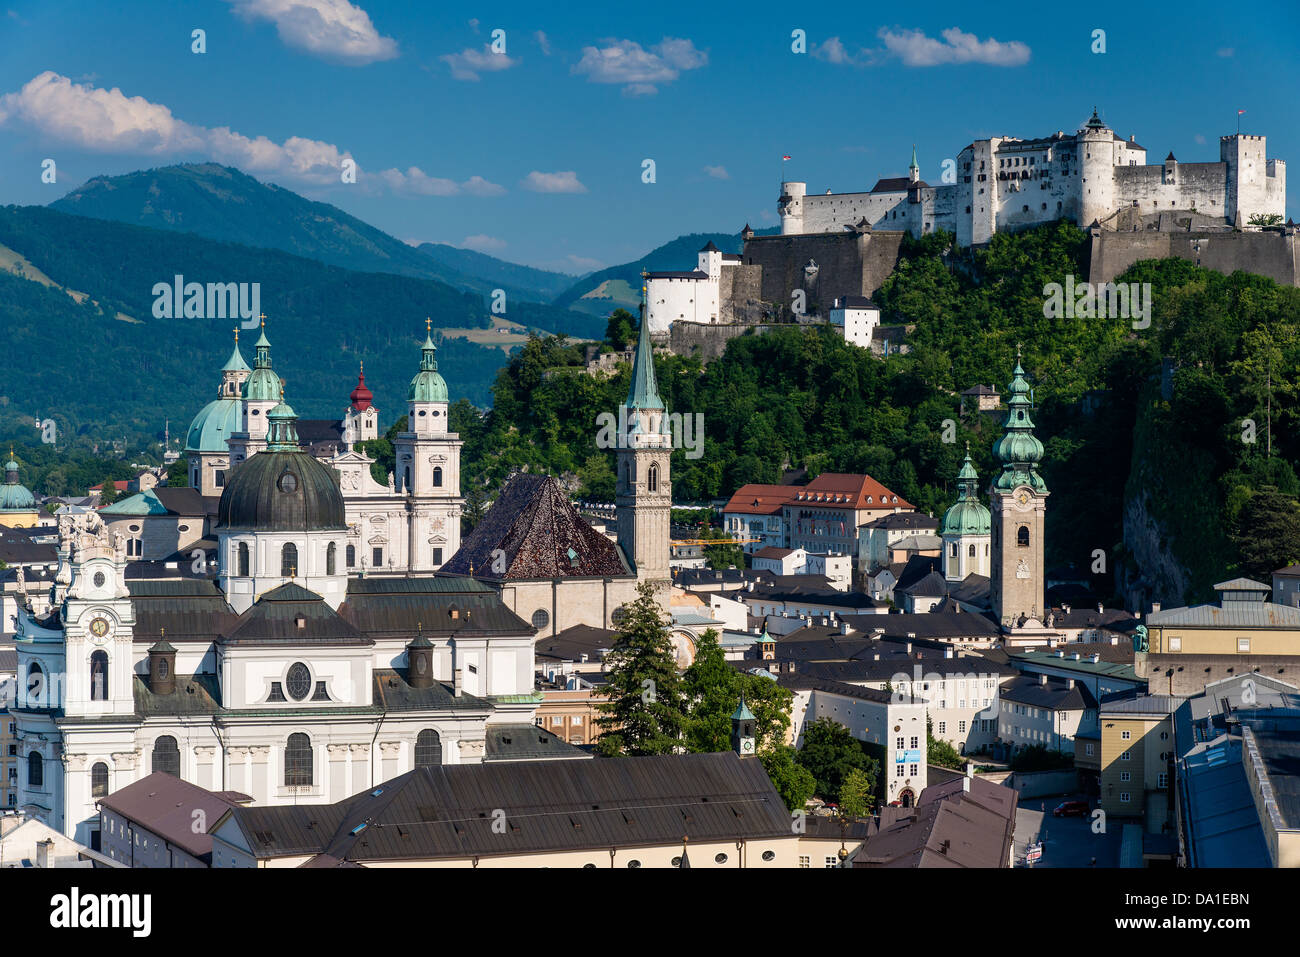 Vue panoramique sur les dômes et les clochers de la vieille ville, Salzbourg, Autriche Banque D'Images